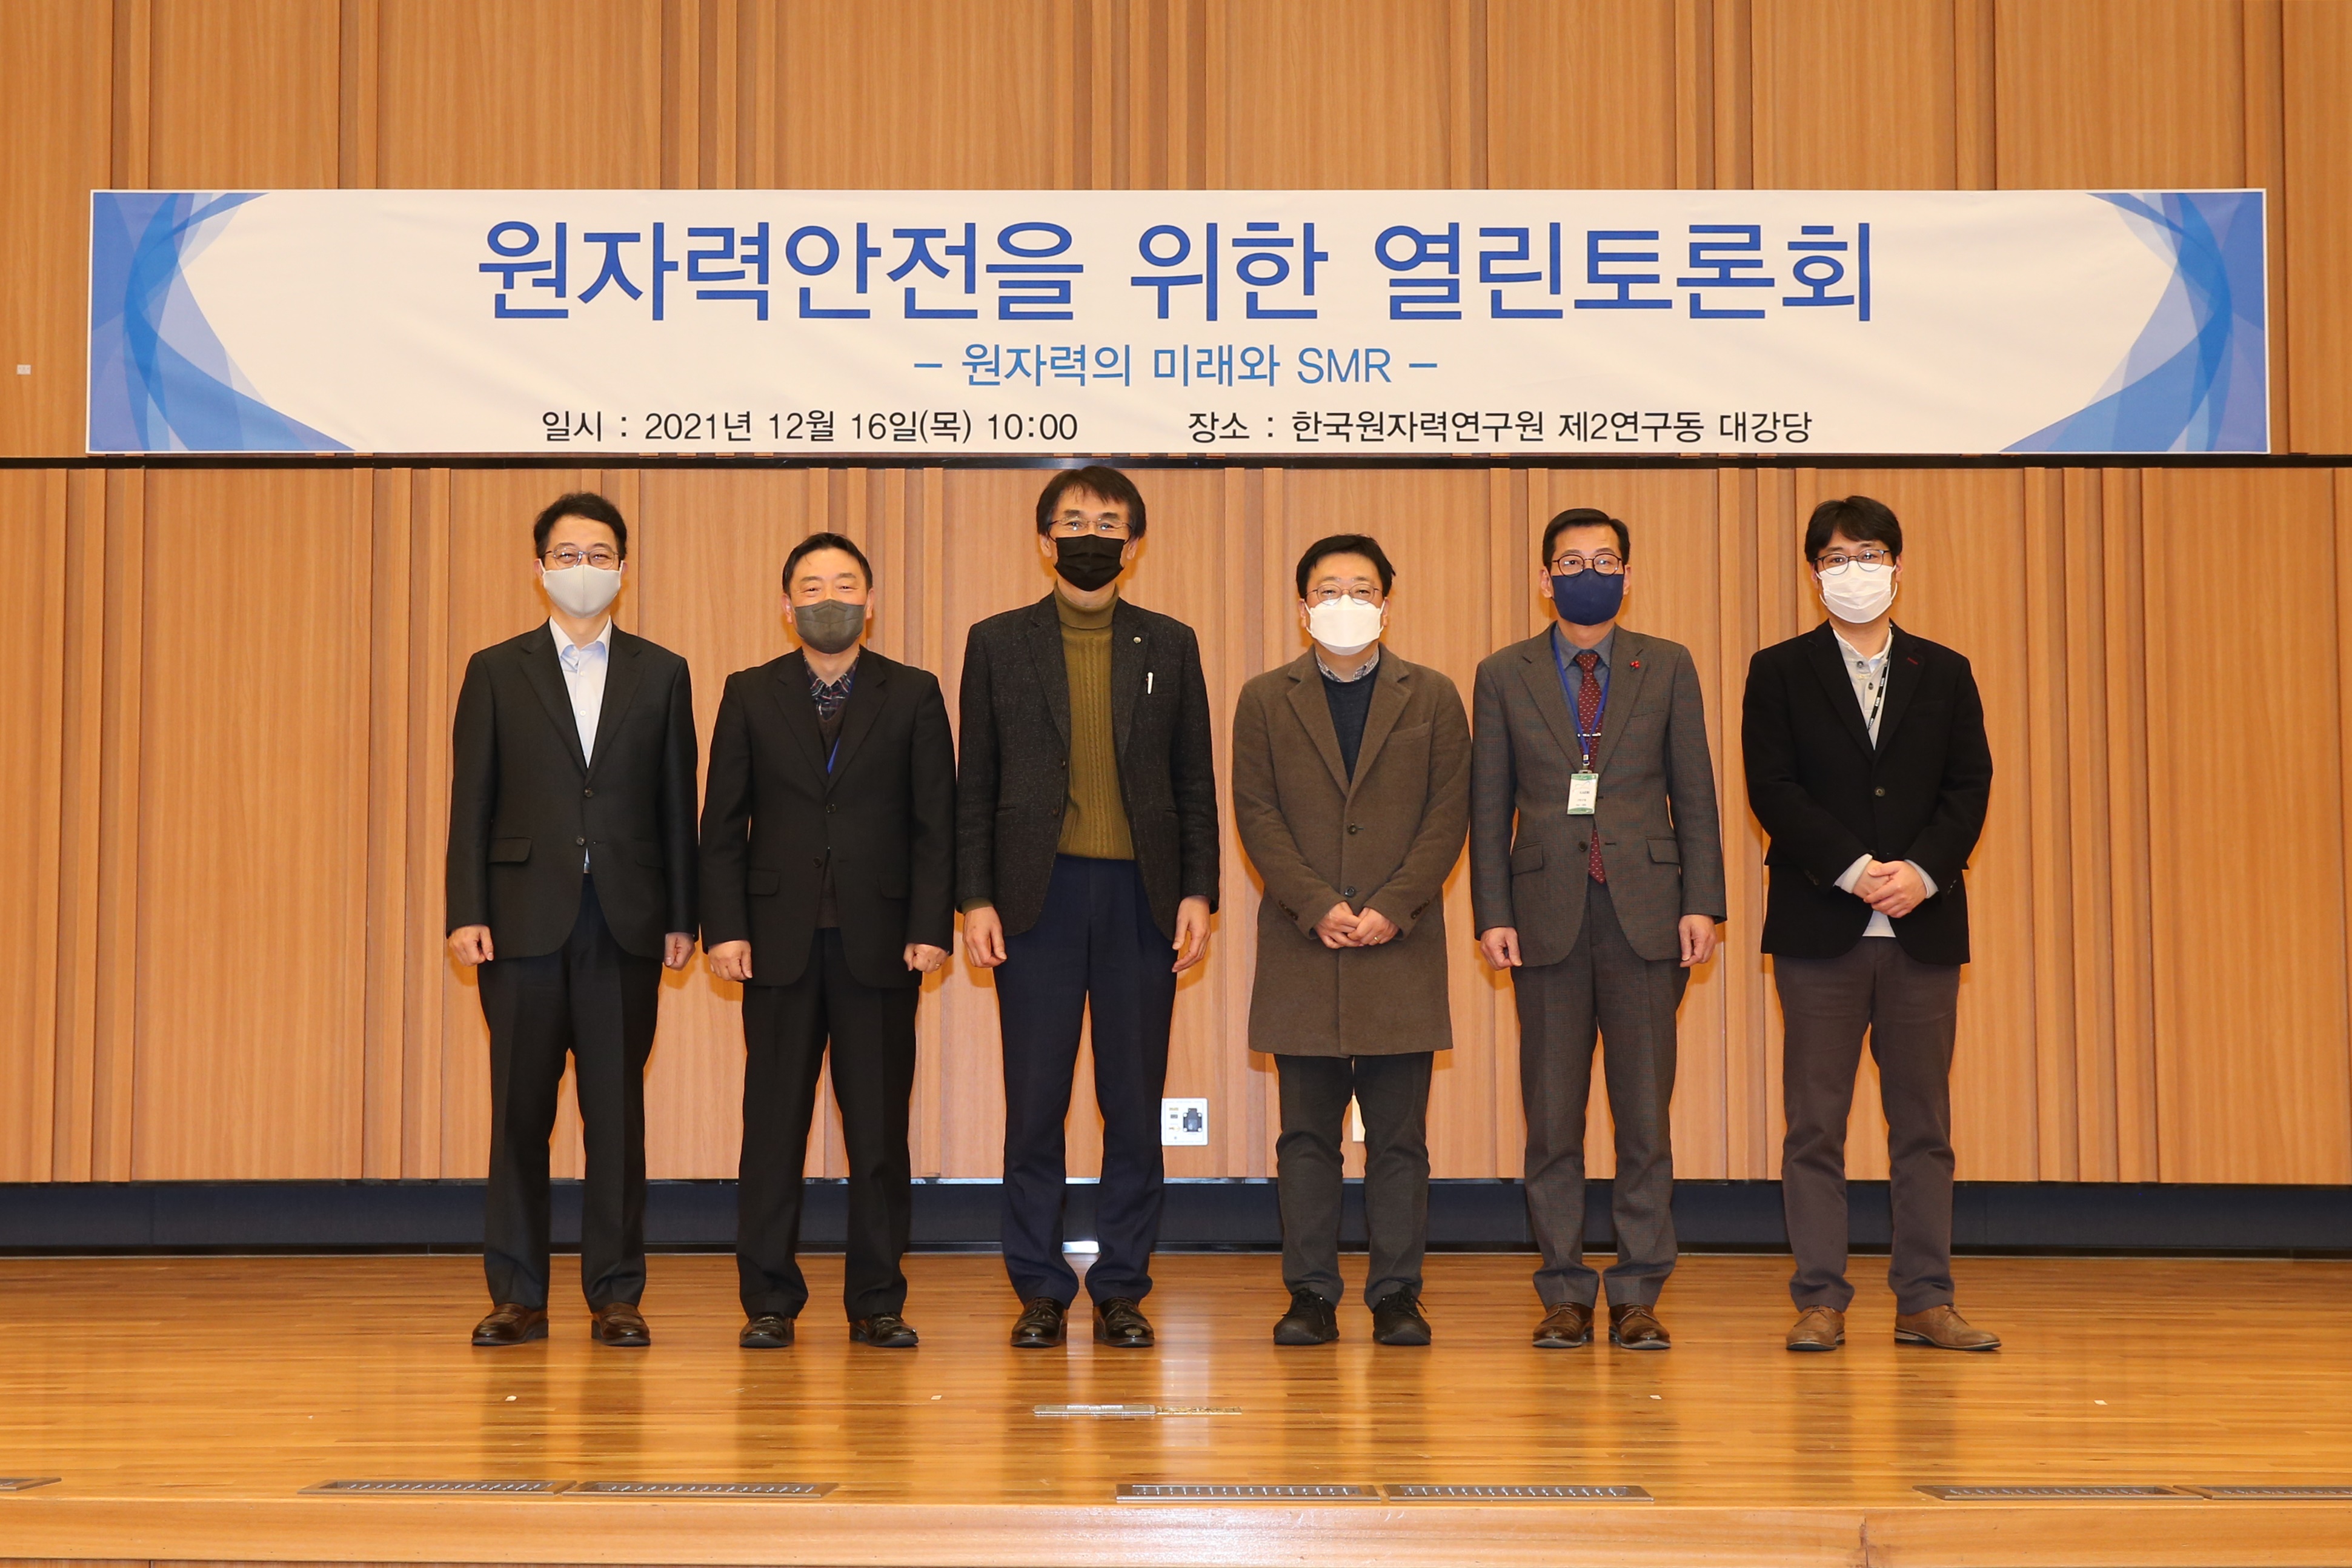 「원자력안전을 위한 열린토론회」 개최